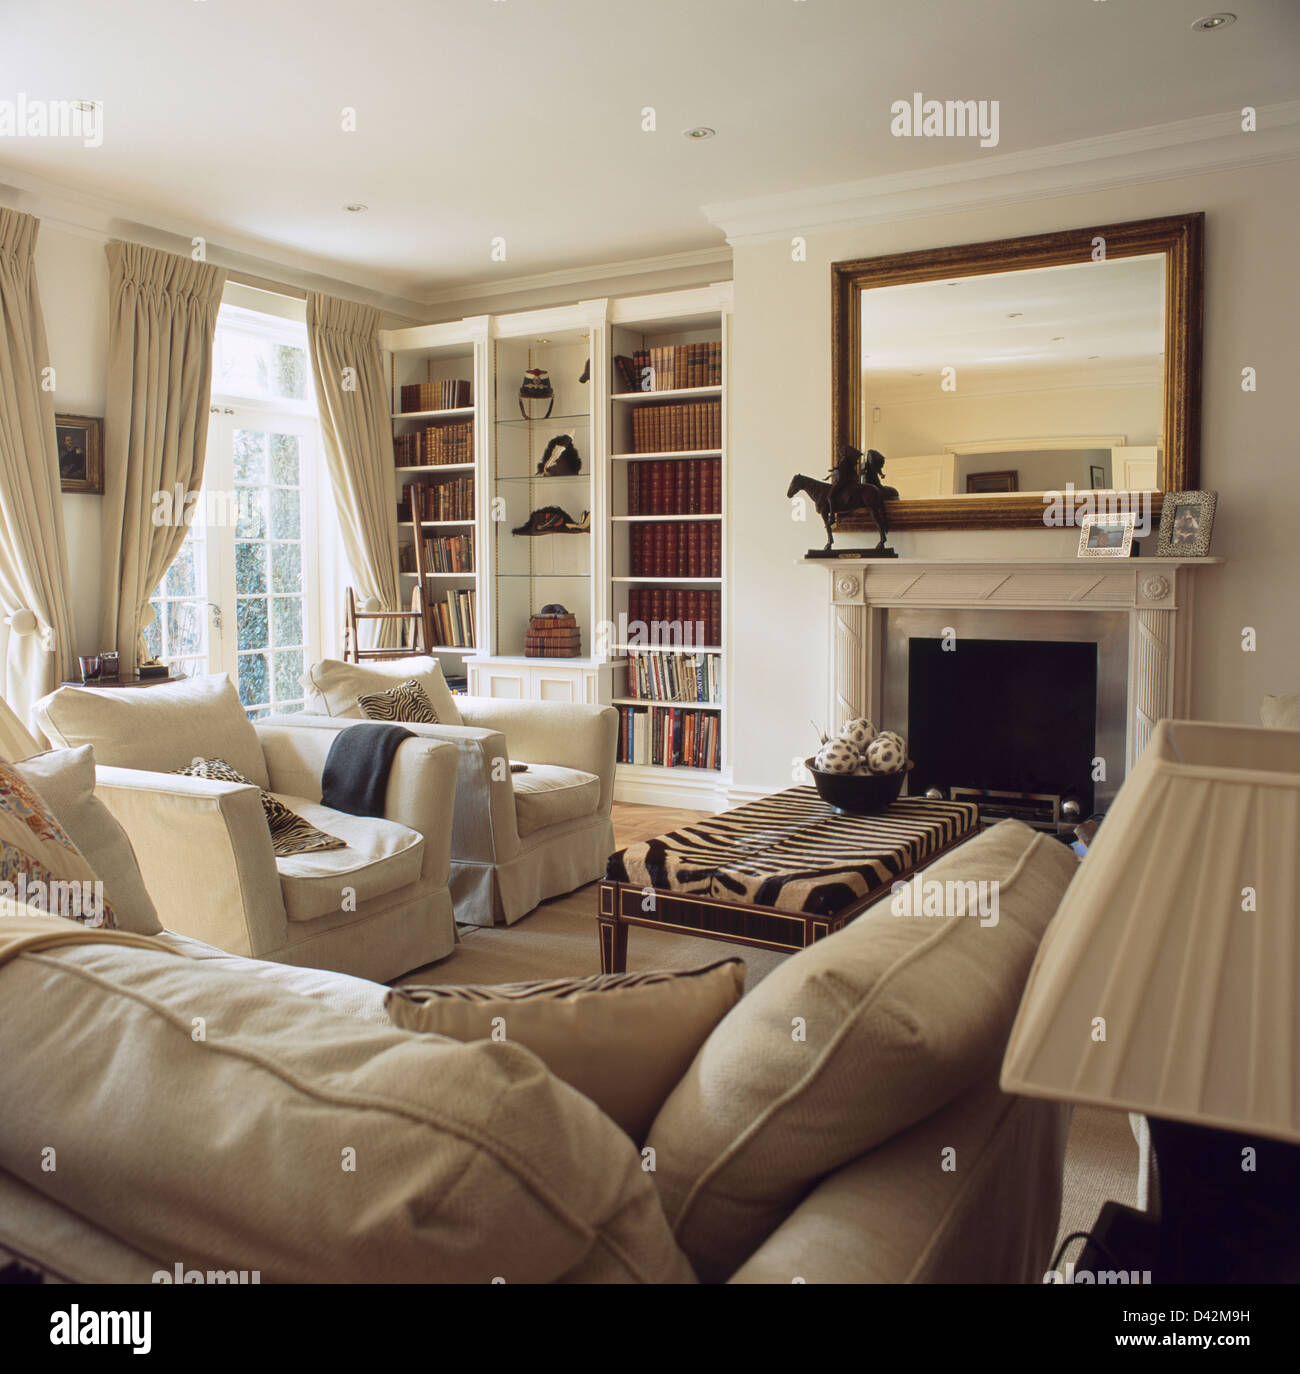 Cremefarbene Couch und Sessel in elegantes Wohnzimmer mit eingebauten  Bücherregal neben Kamin unter großer Spiegel Stockfotografie - Alamy